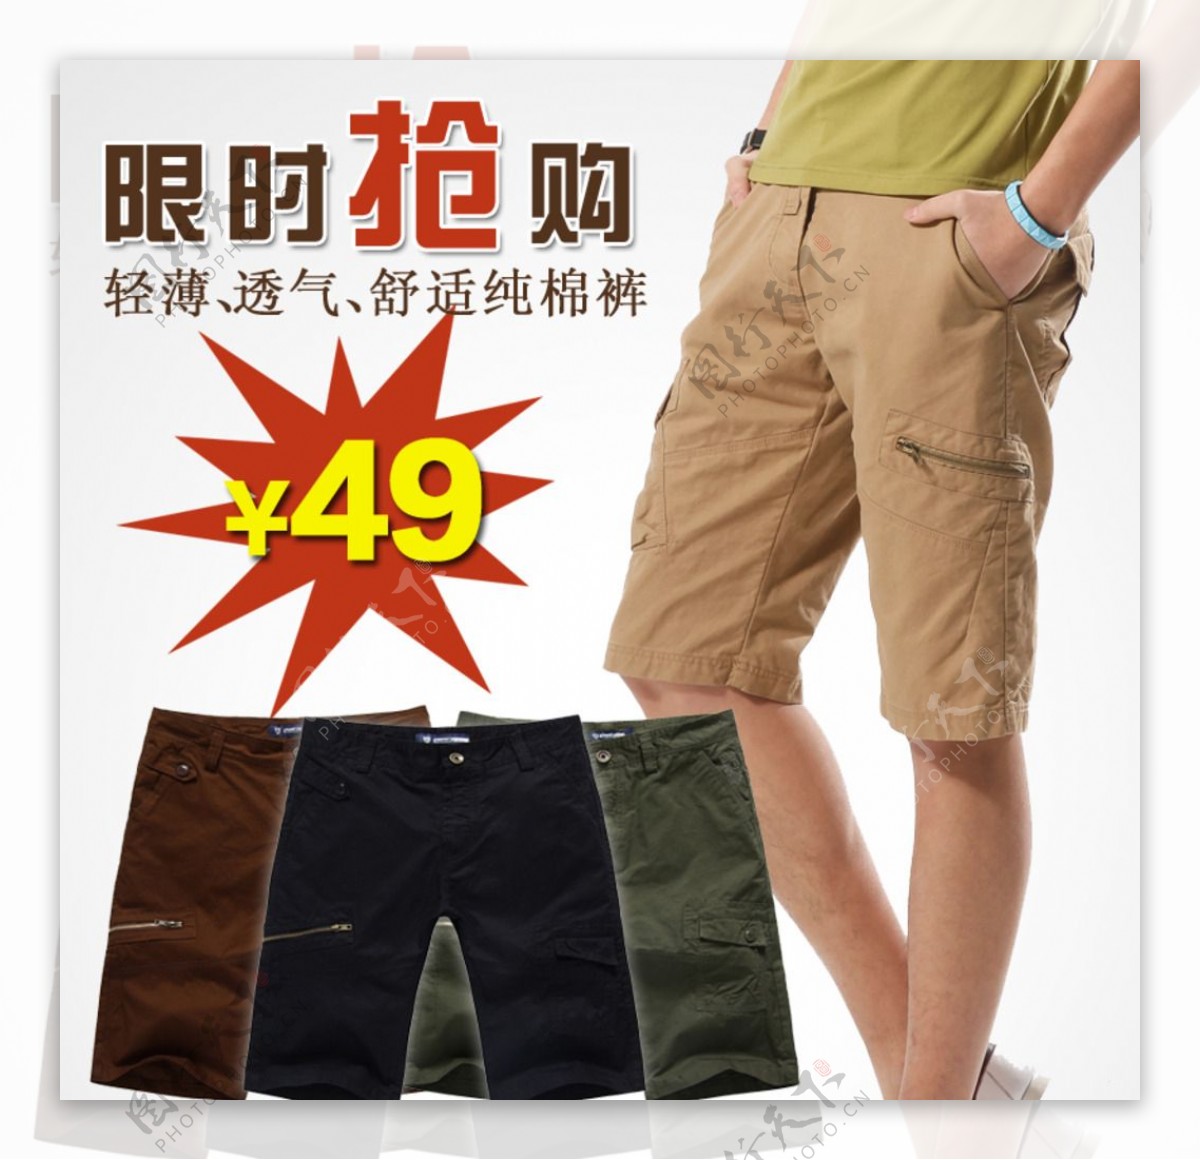 男士短裤展示促销活动